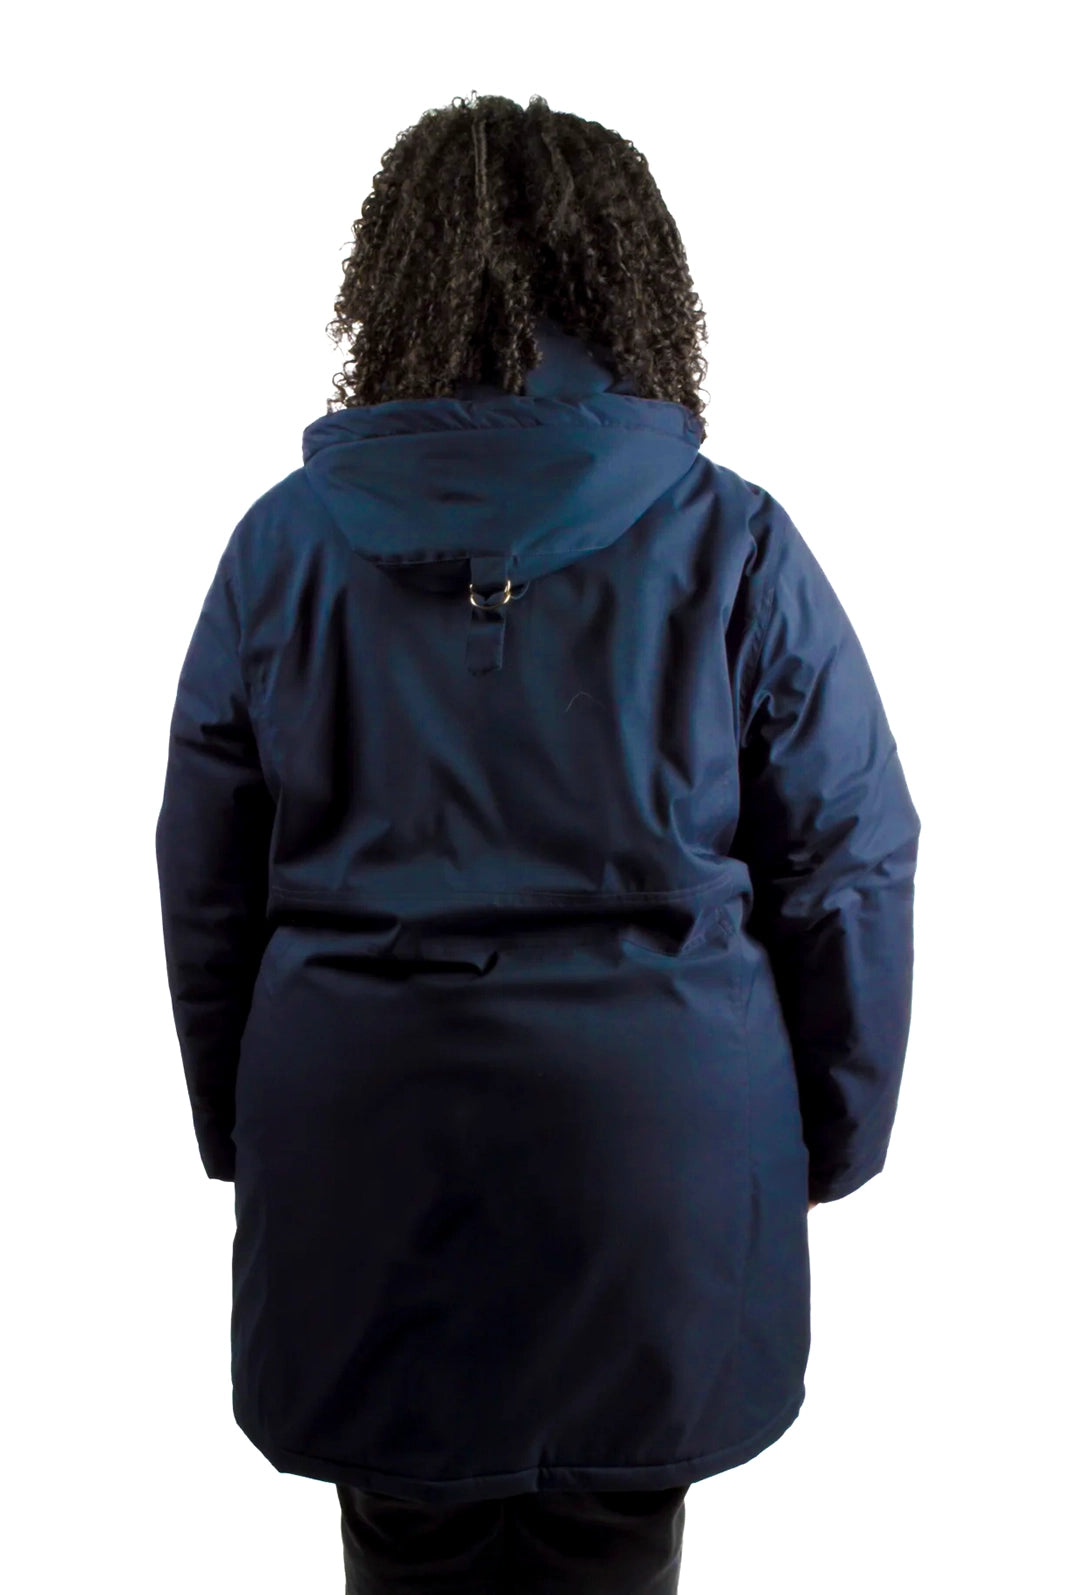 Manteau isolé pour l'hiver glacial Harfang Taille Plus Pour Femme de Sportive Plus